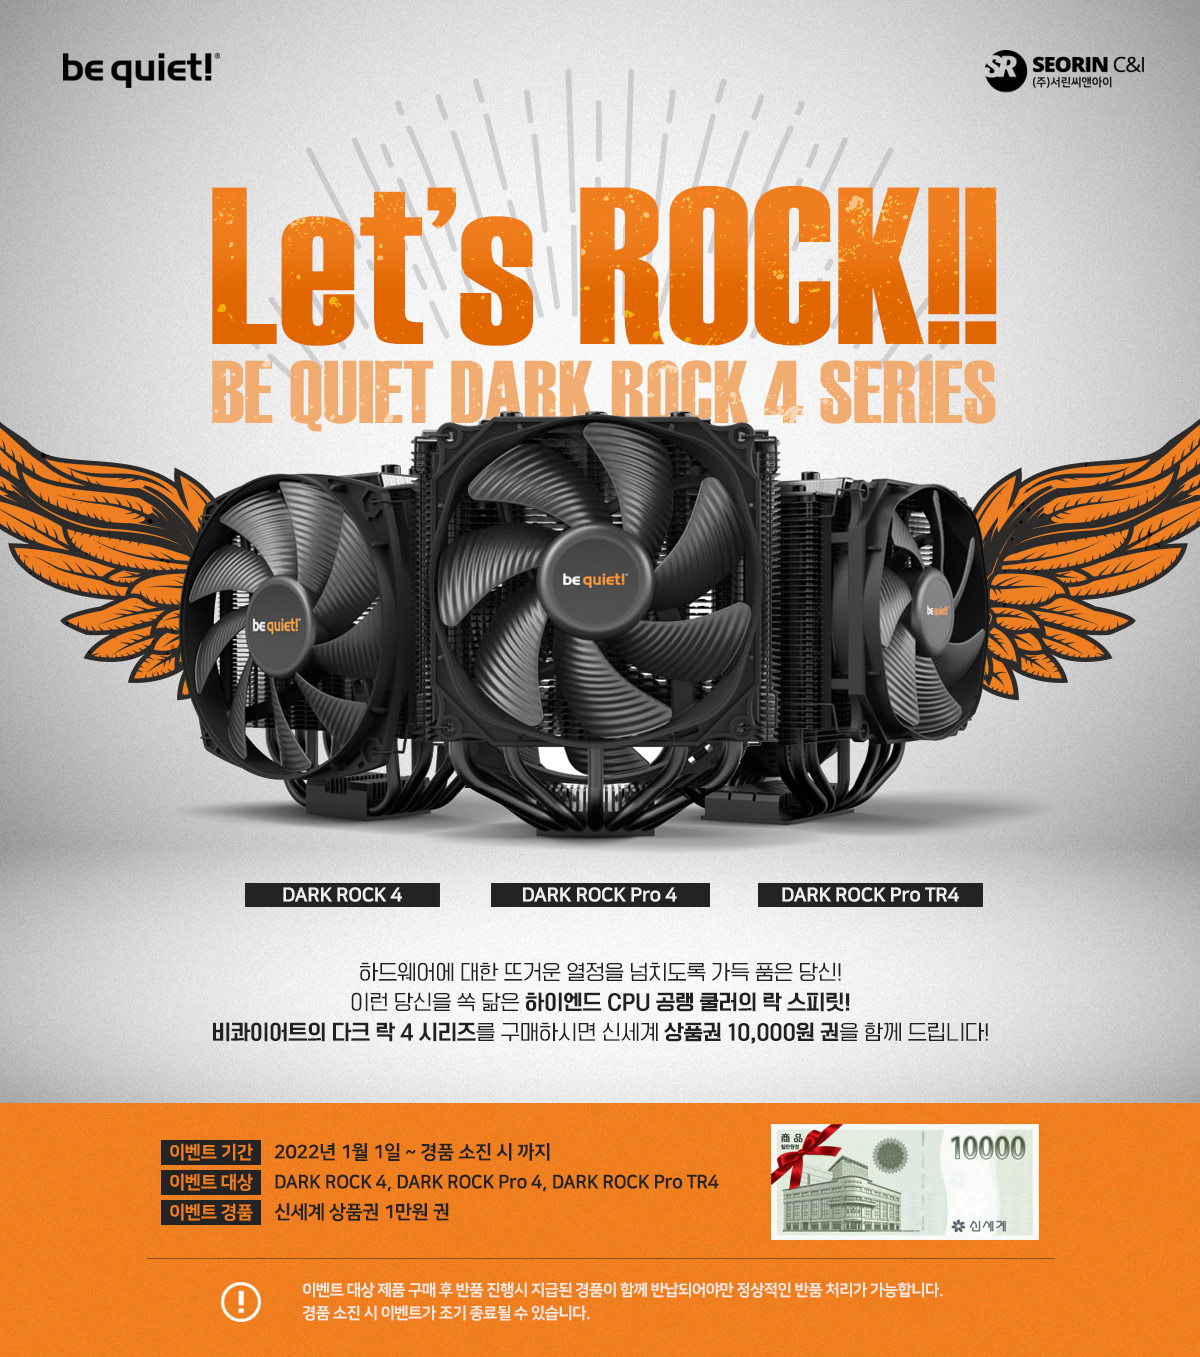 Let's ROCK! 비콰이어트 다크 락 4 시리즈 구매자 대상 1만원 신세계 상품권 증정 이벤트!